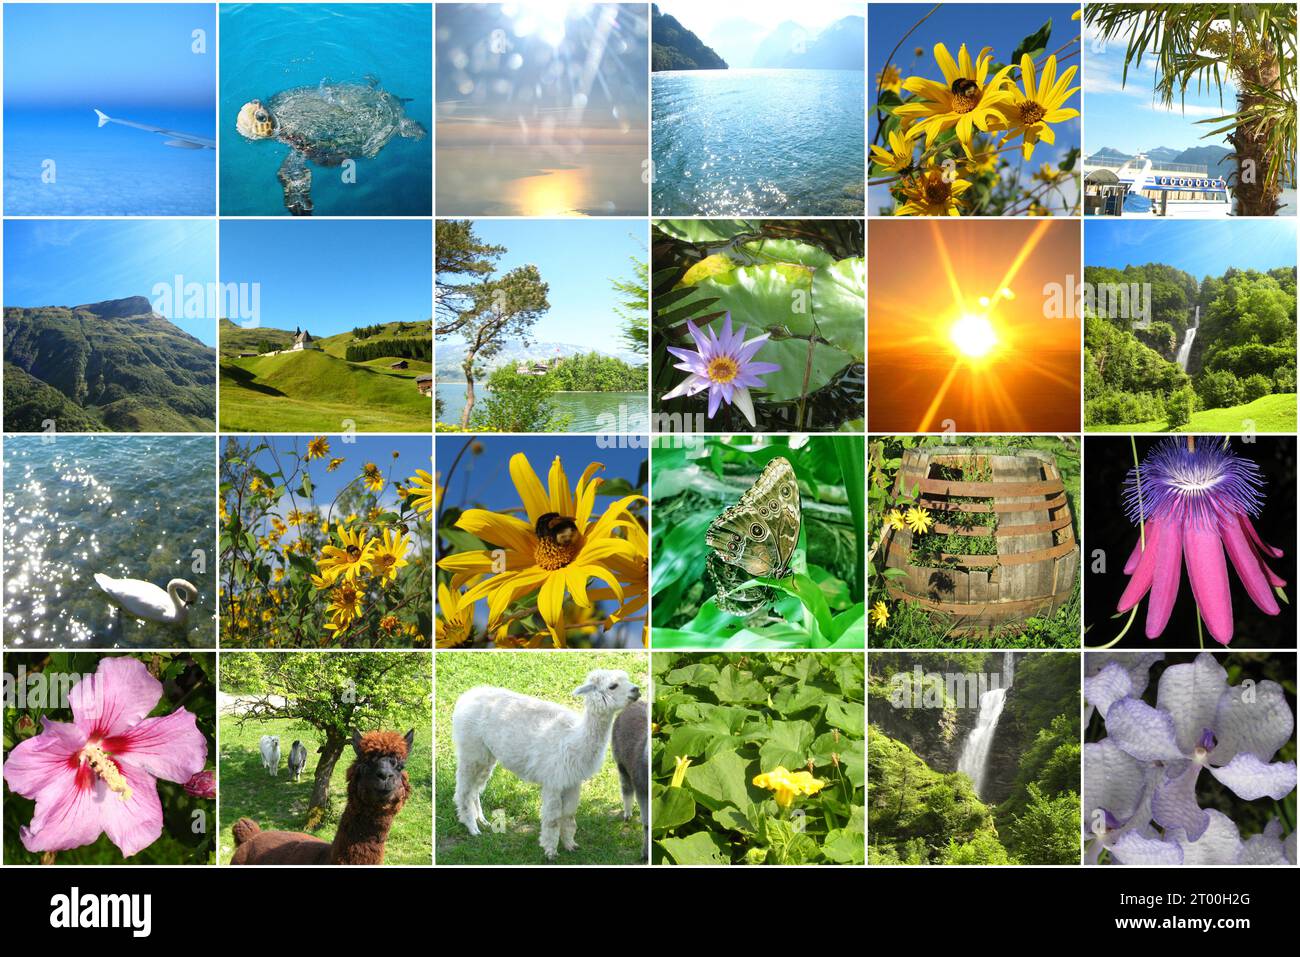 Blumen am Tag mit Tieren, blauer Himmel, osterkarten, Reisen, 24-Bilder-Kalender, Urlaub Postkarte Urlaub, Weltreise Tour Stockfoto